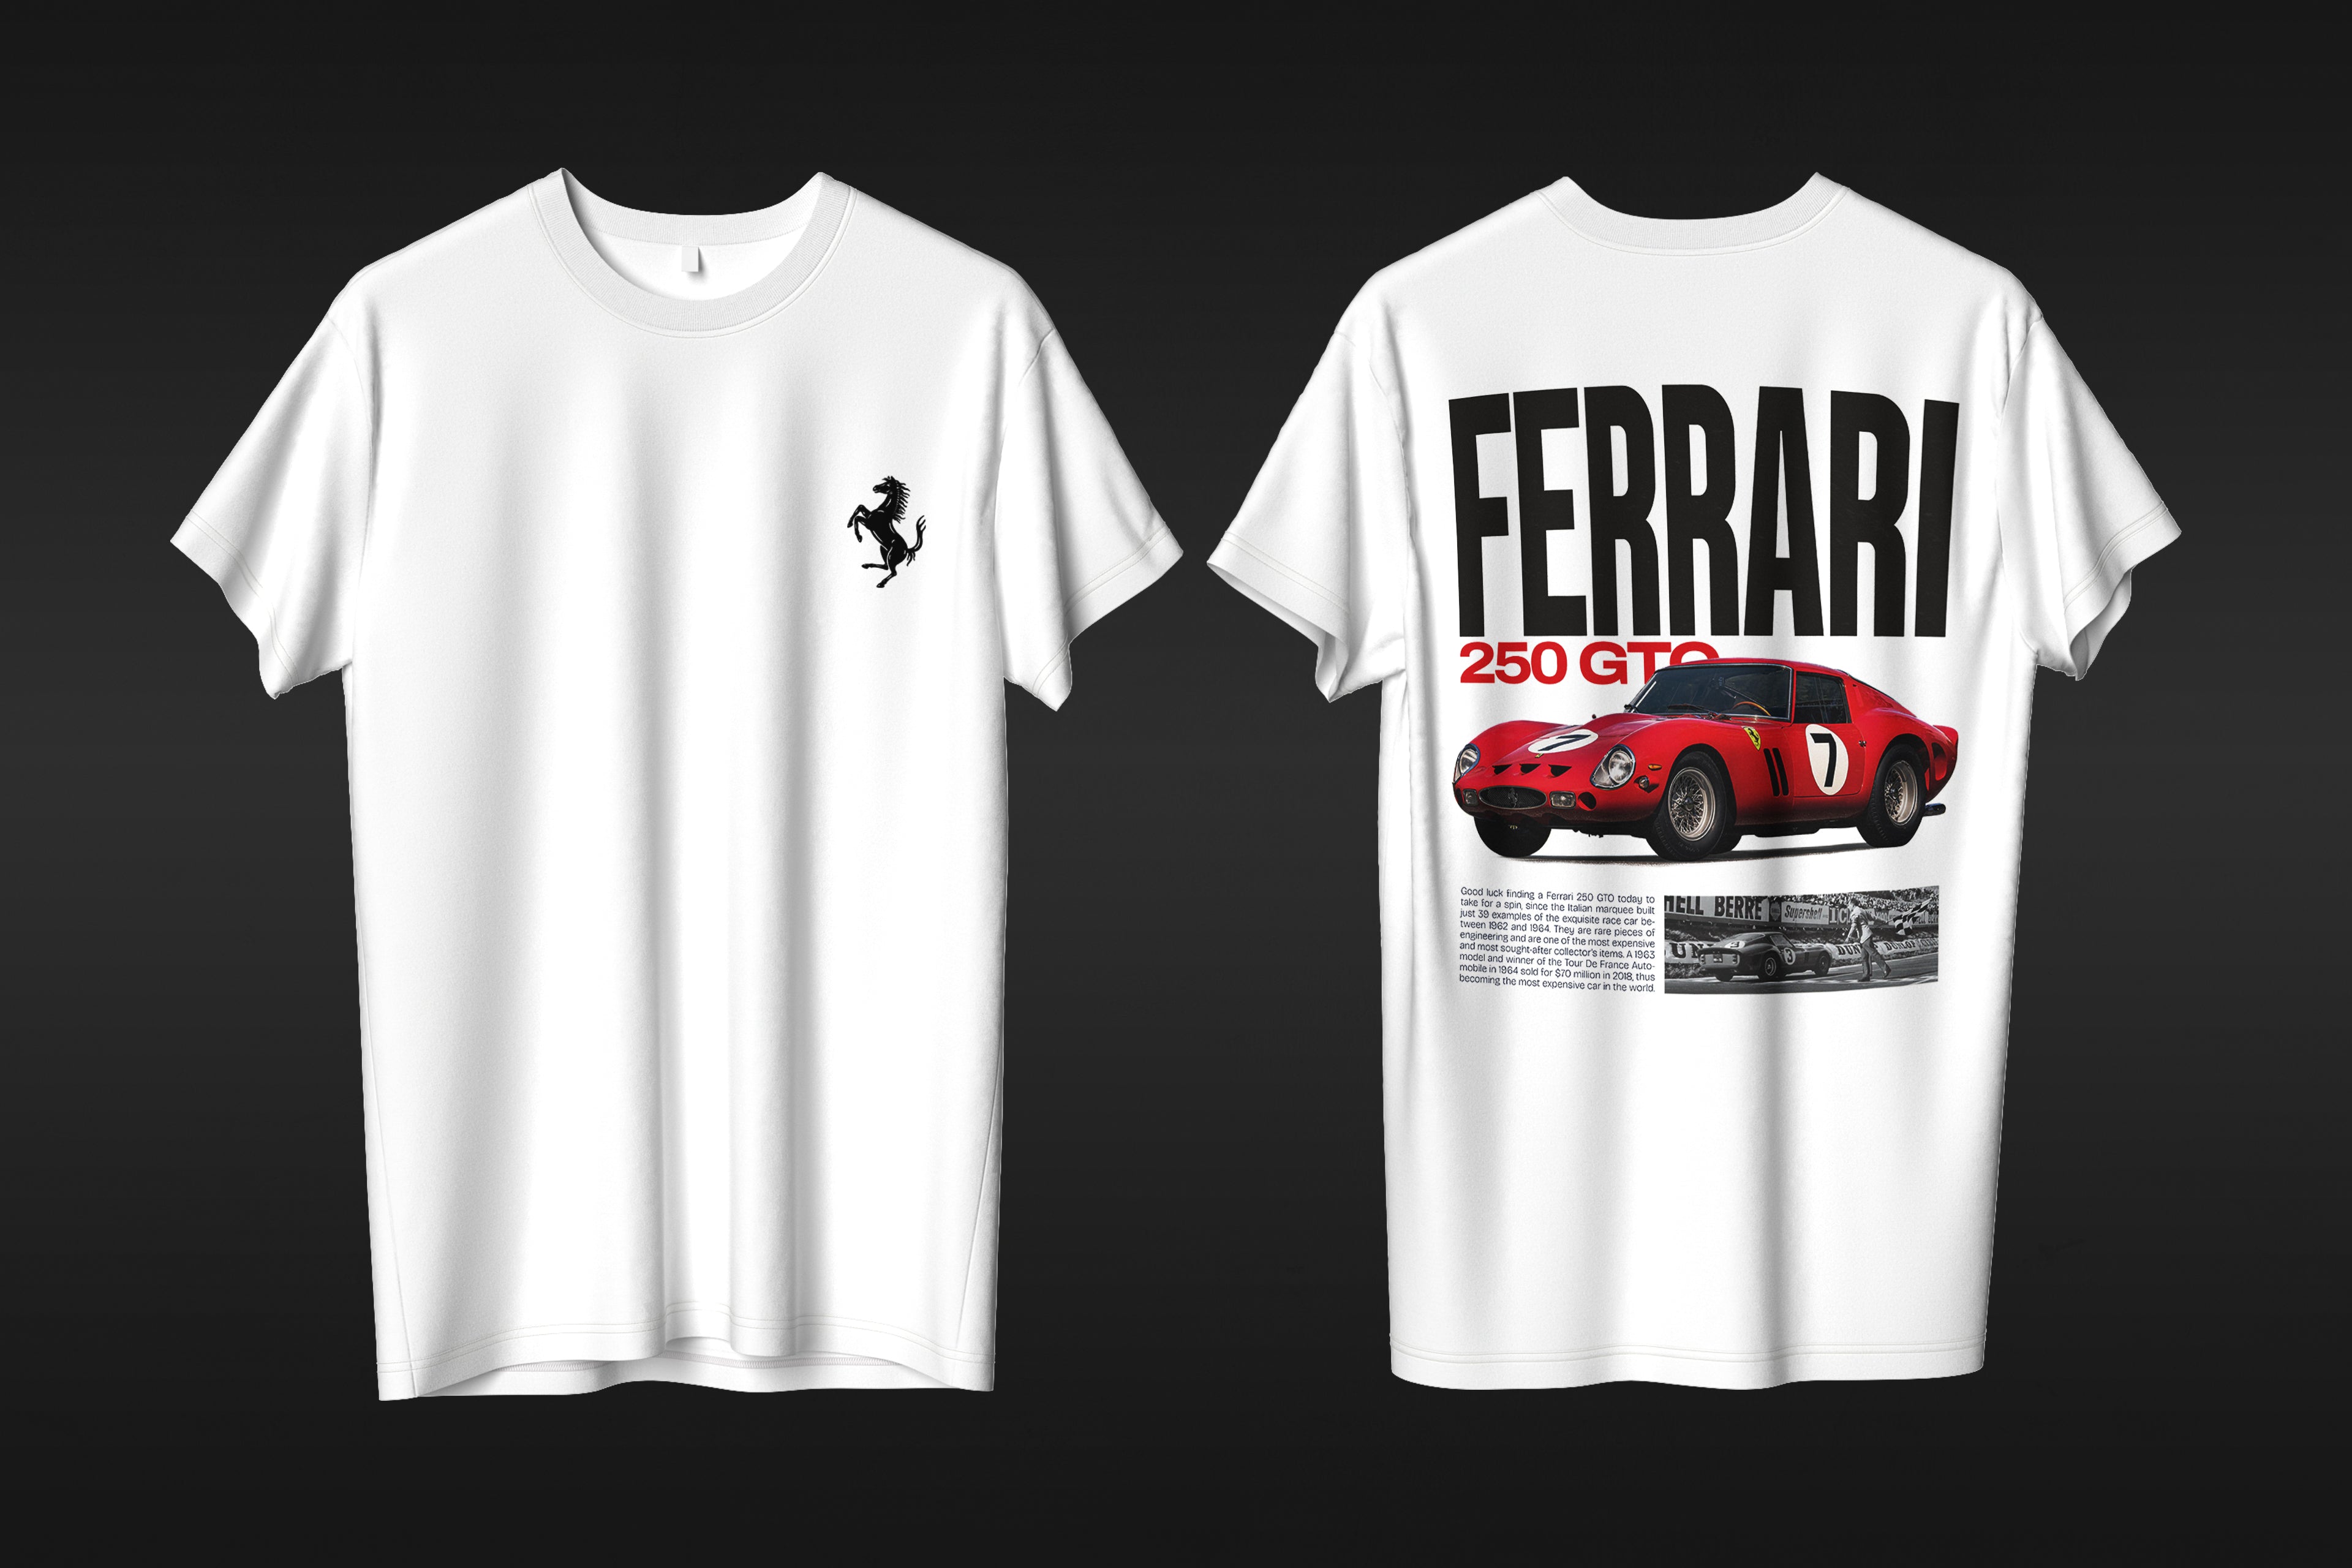 Ferrari 250 GTO - T-shirt